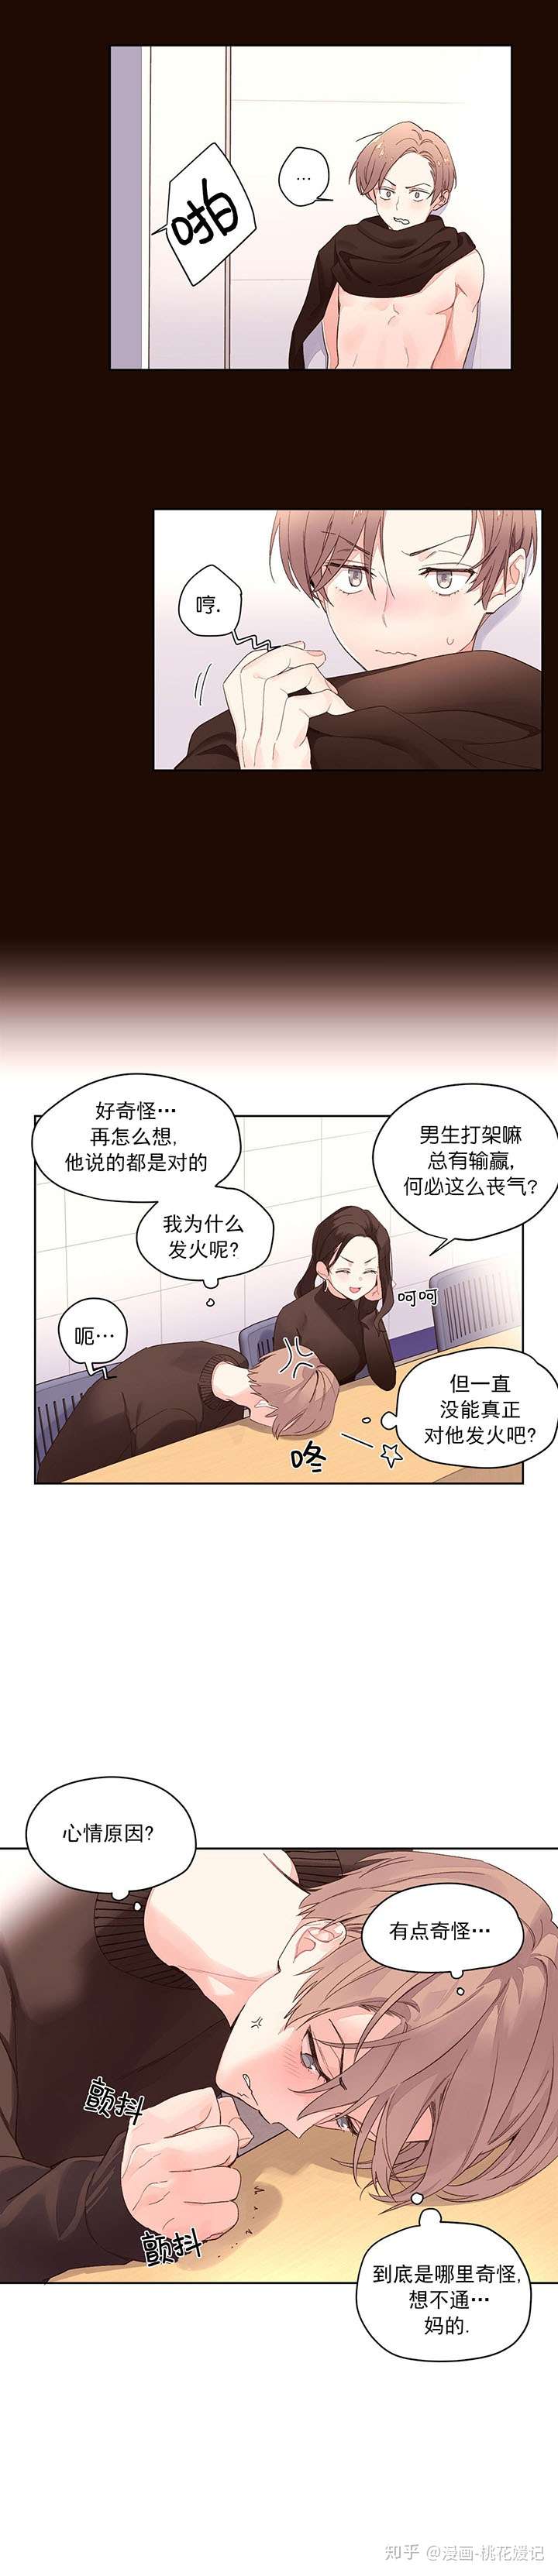 漫画推荐 4周恋人 彩虹 知乎